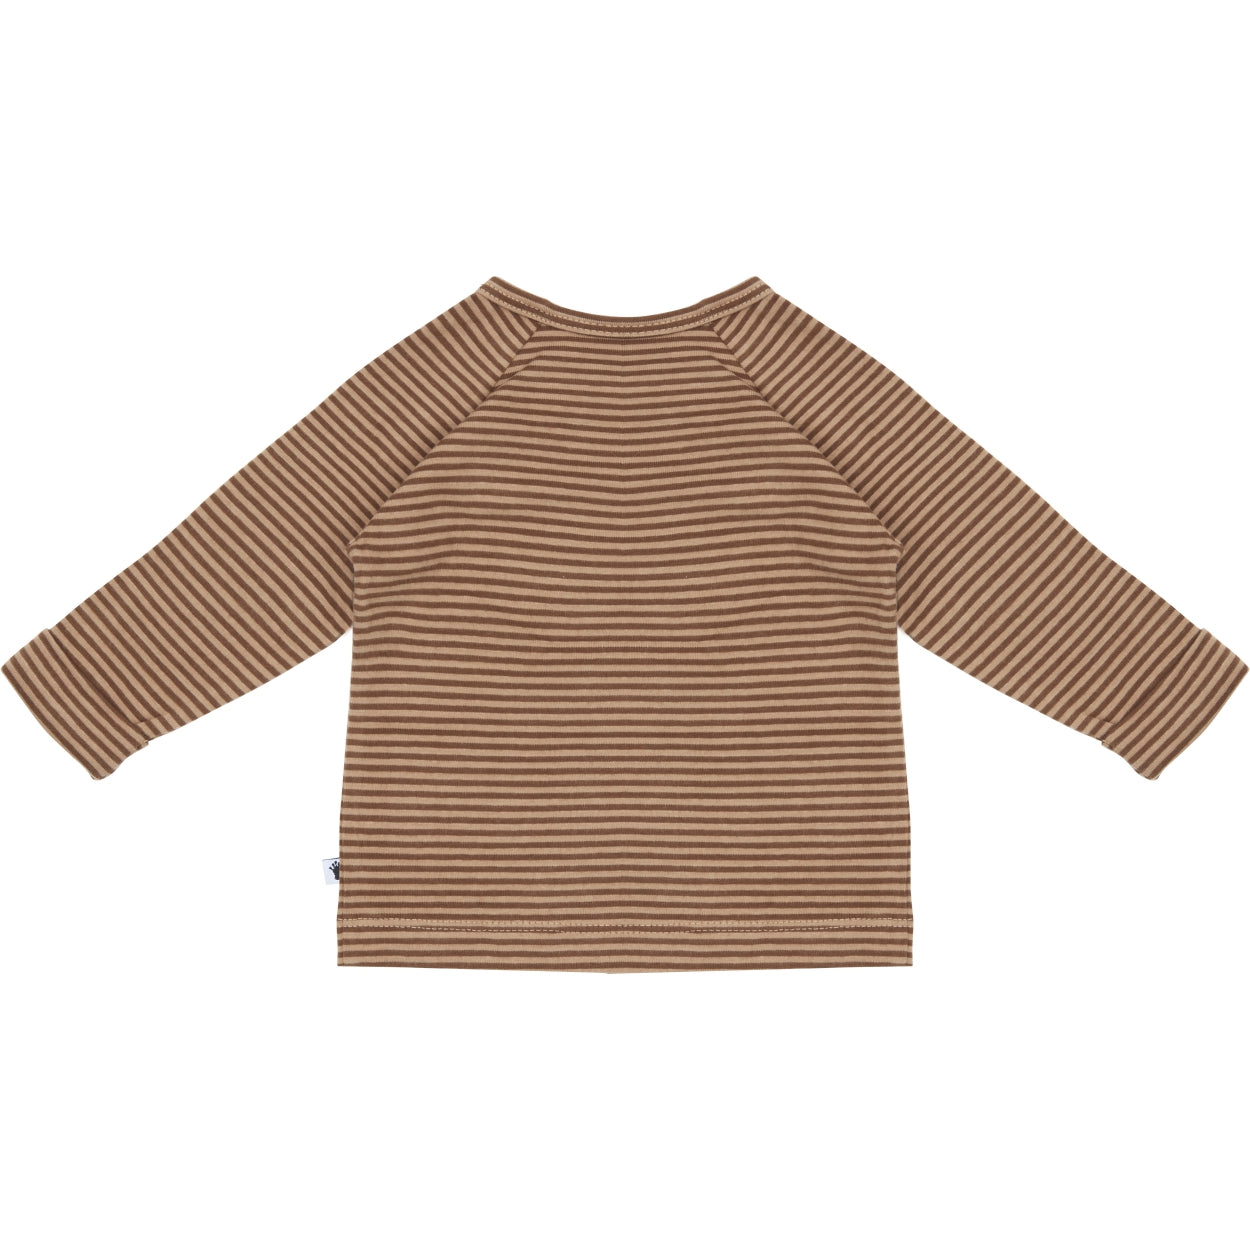 Jongens Shirt Buttons van Klein Baby in de kleur Stripe Burro/Rawhide in maat 86.